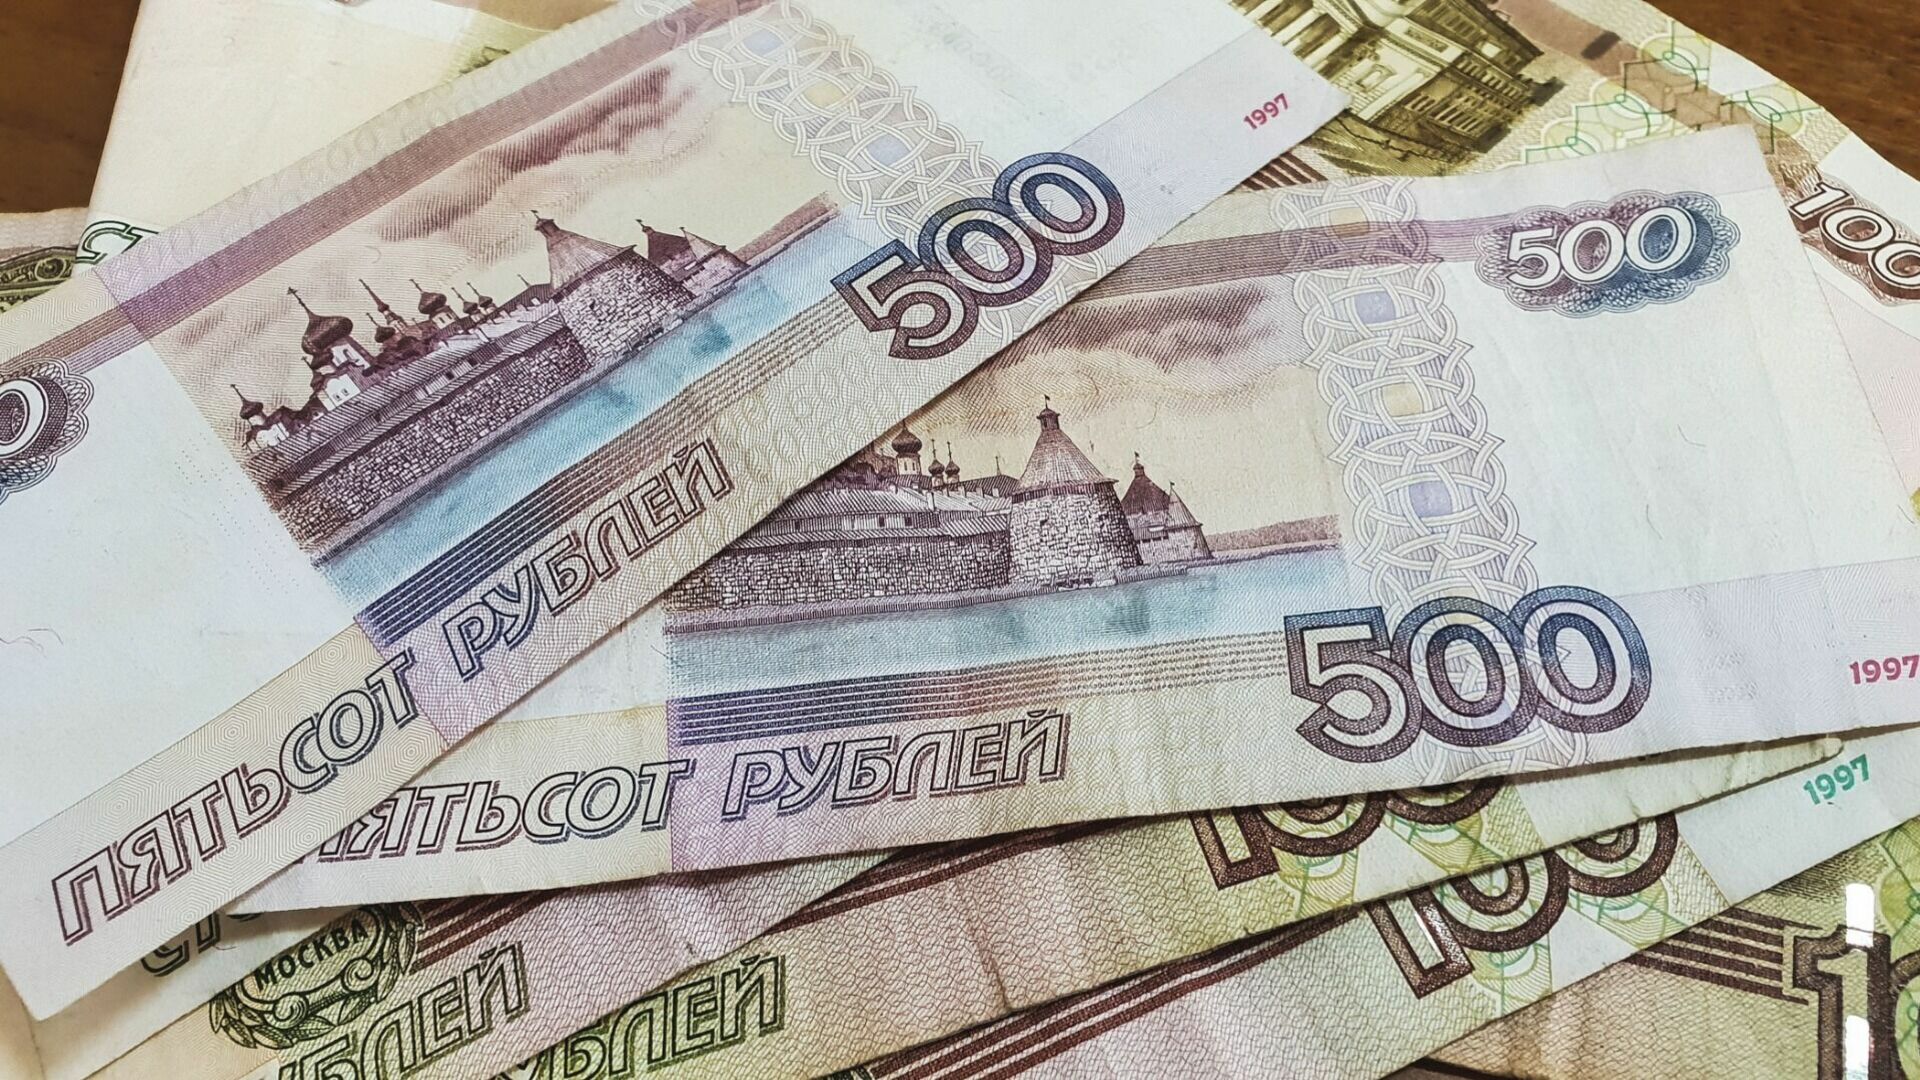 Волгоградским станочникам предлагают работу за 200 тысяч рублей в месяц